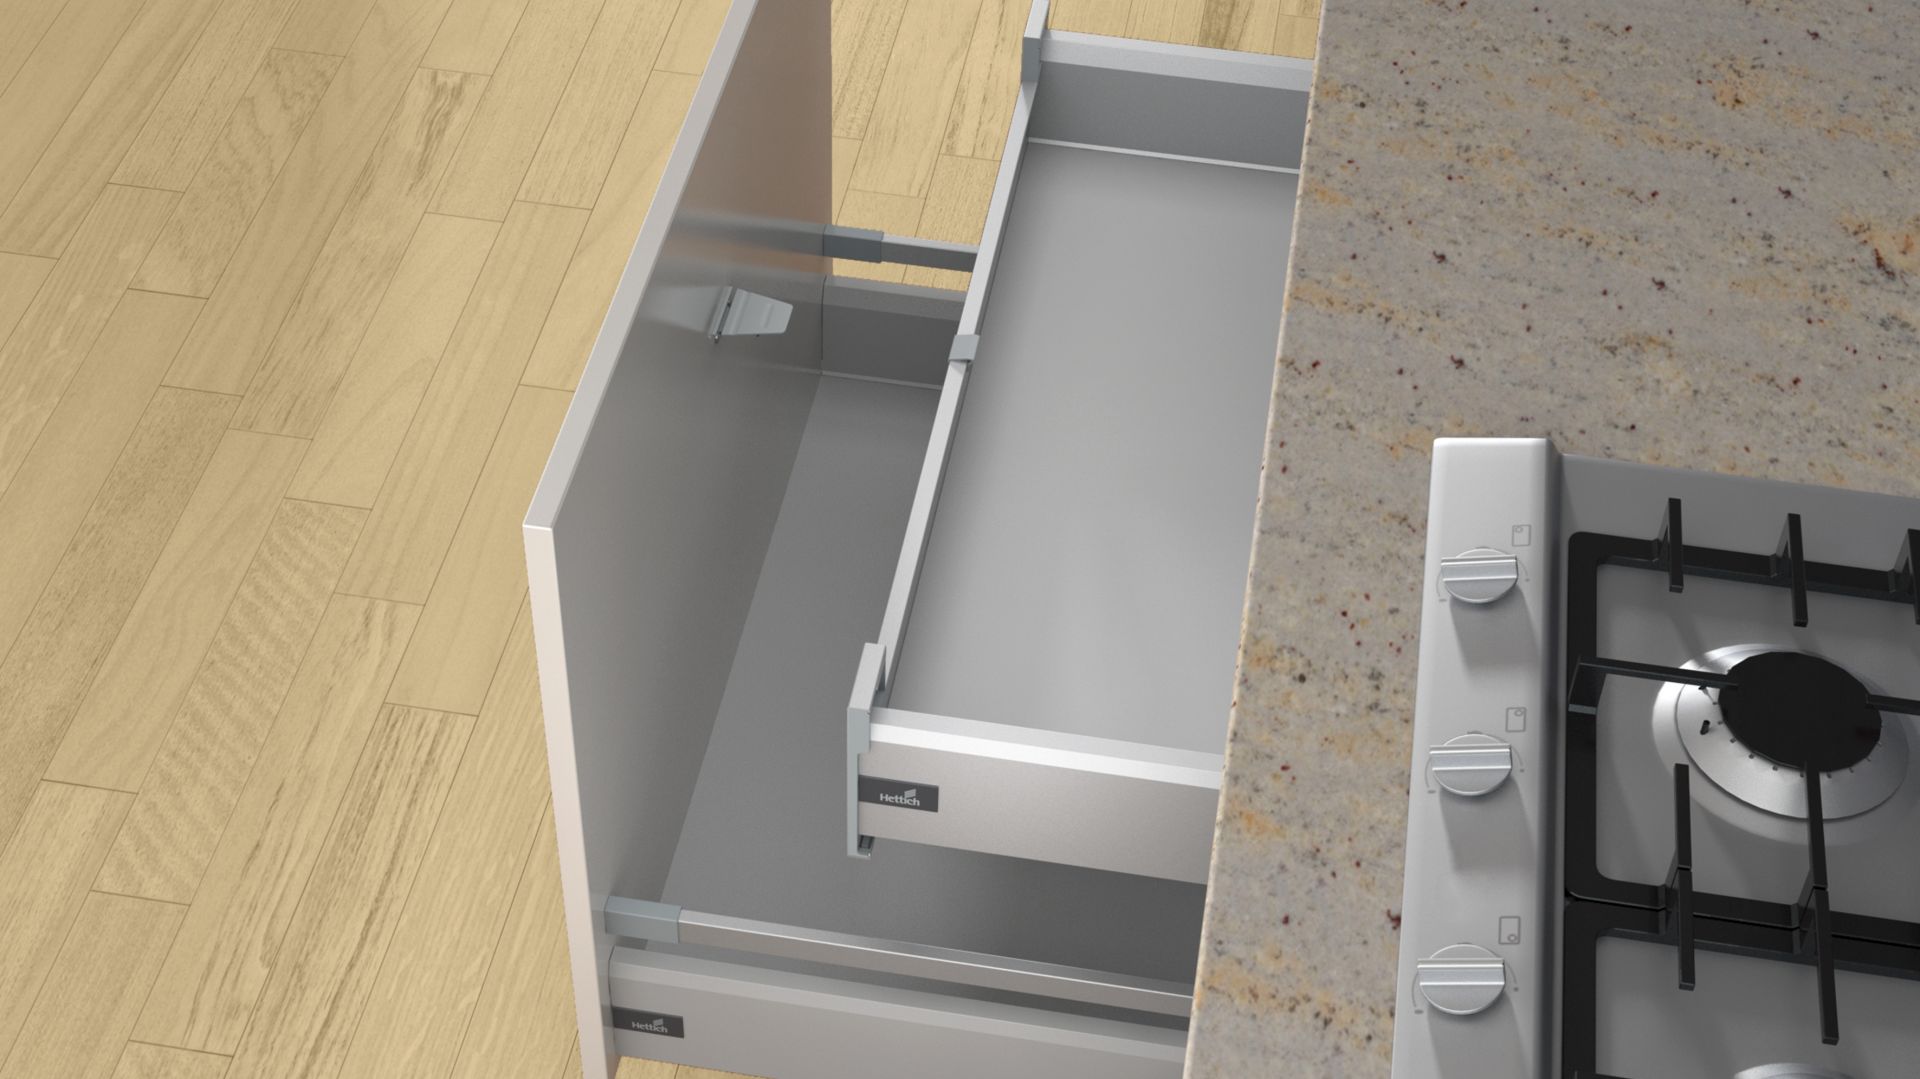 Jak poprawić funkcjonalność szuflady wewnętrznej w kuchni?